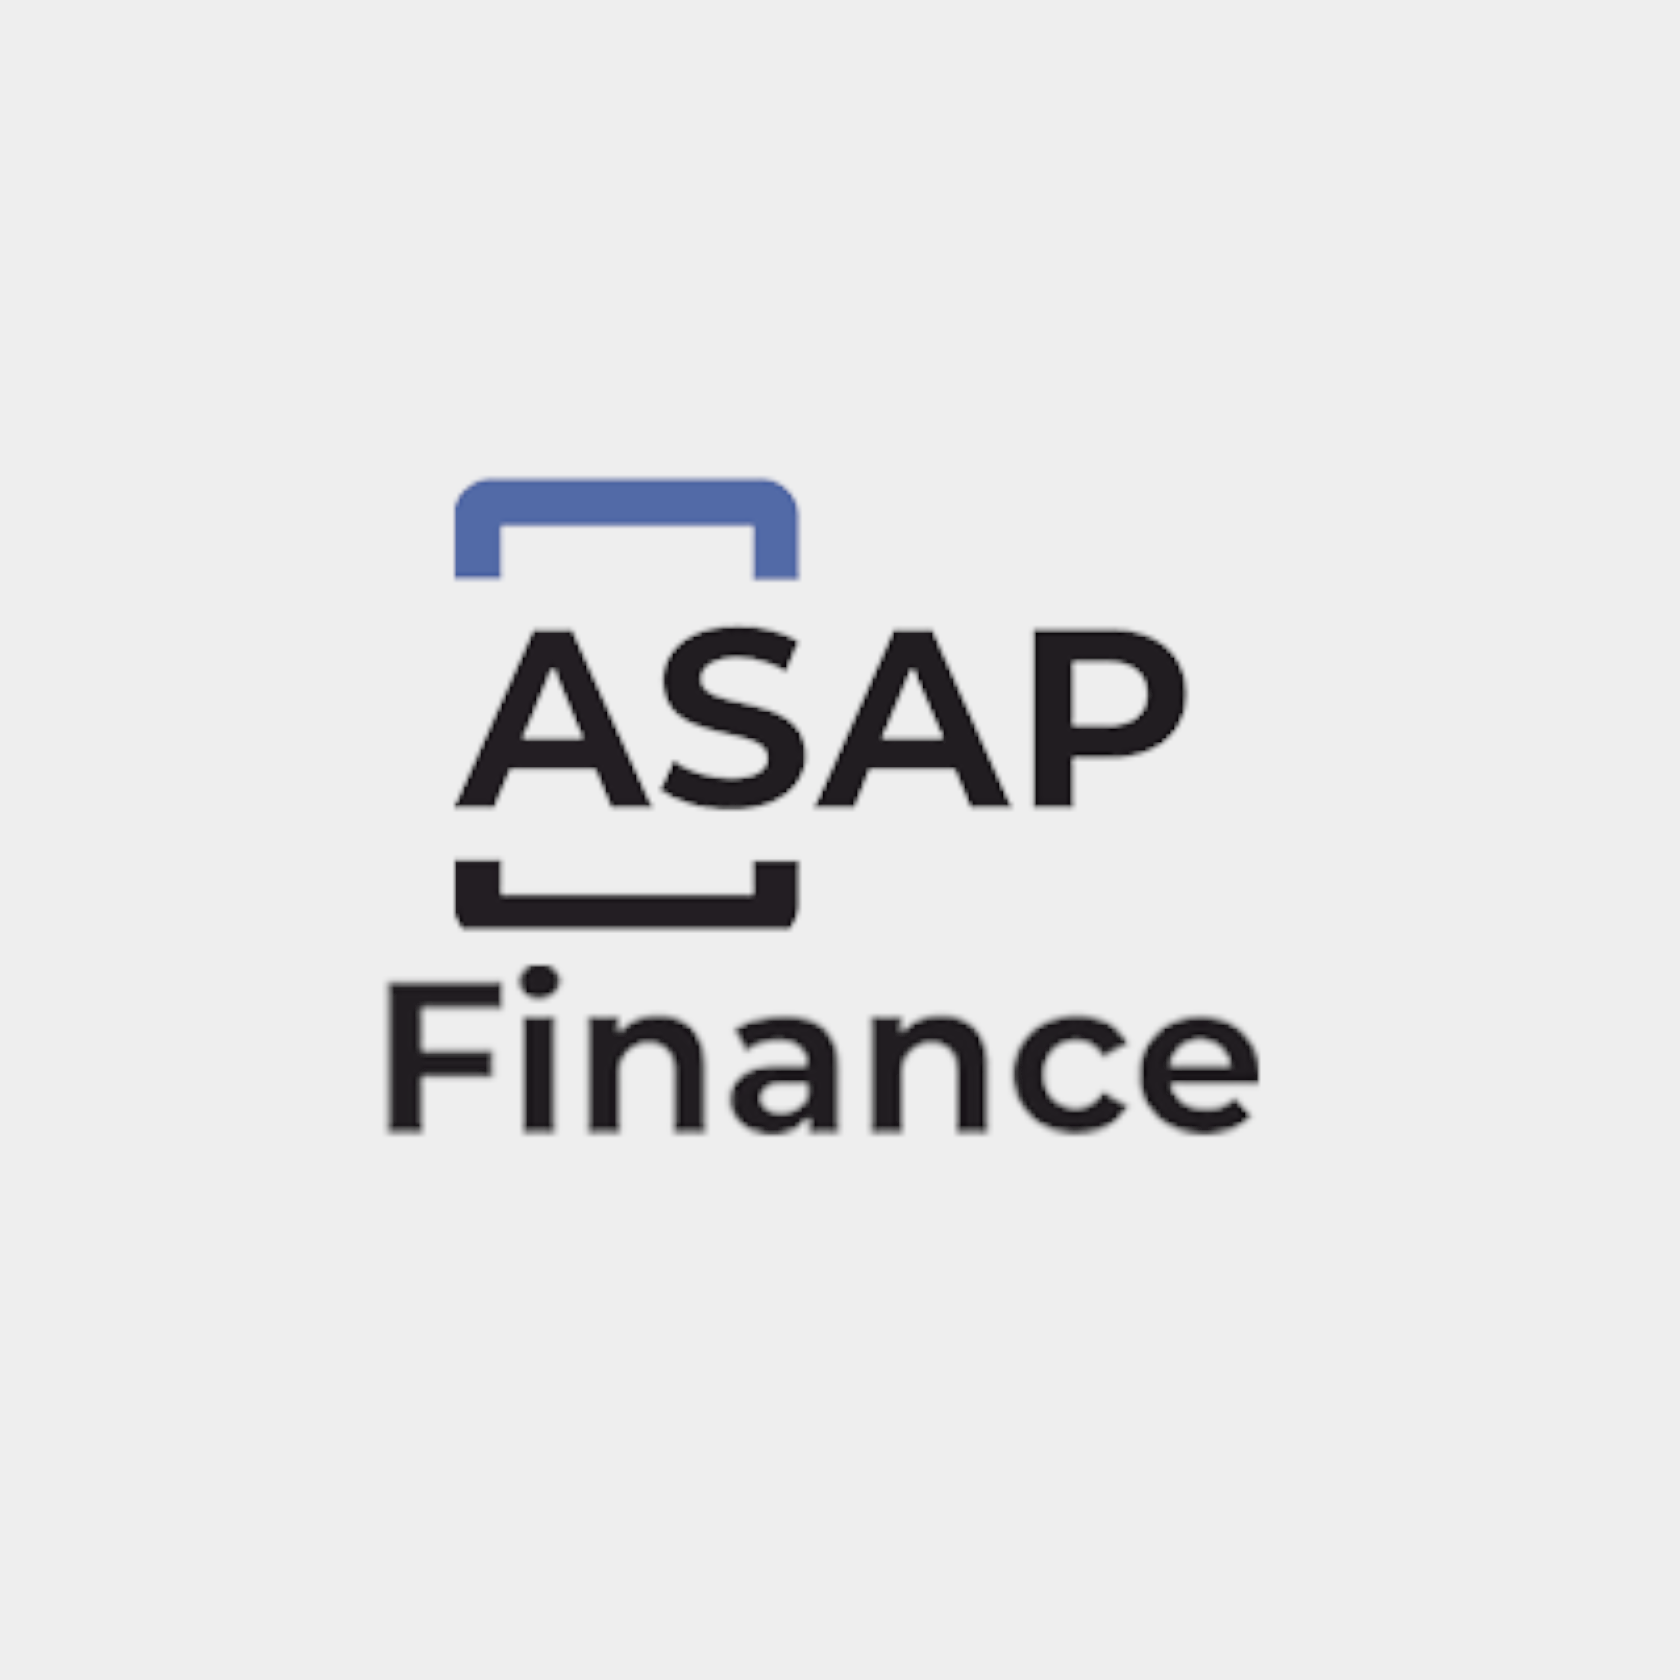 Online loan bad credit ASAP Finance